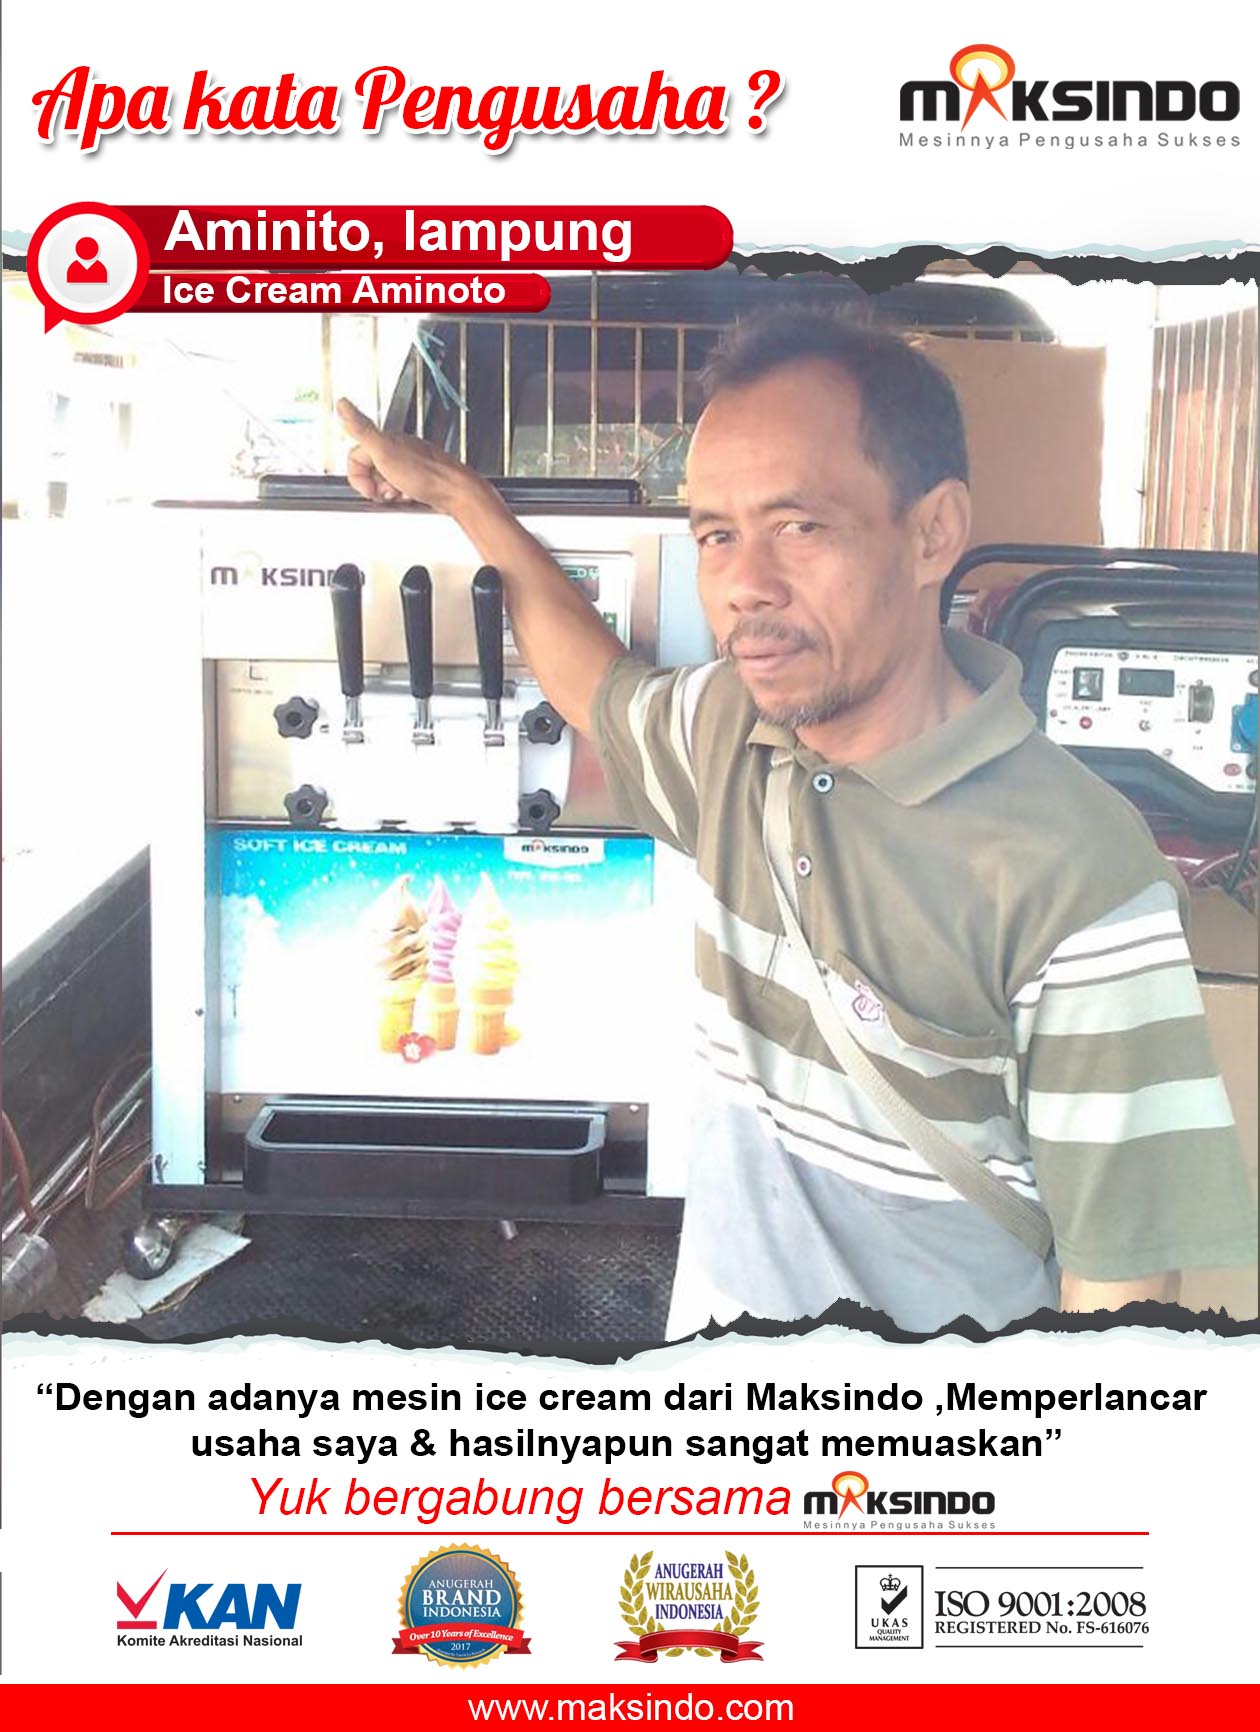 Ice Cream Aminoto : Mesin Es Krim Maksindo Usaha Semakin Lancar dan Memuaskan